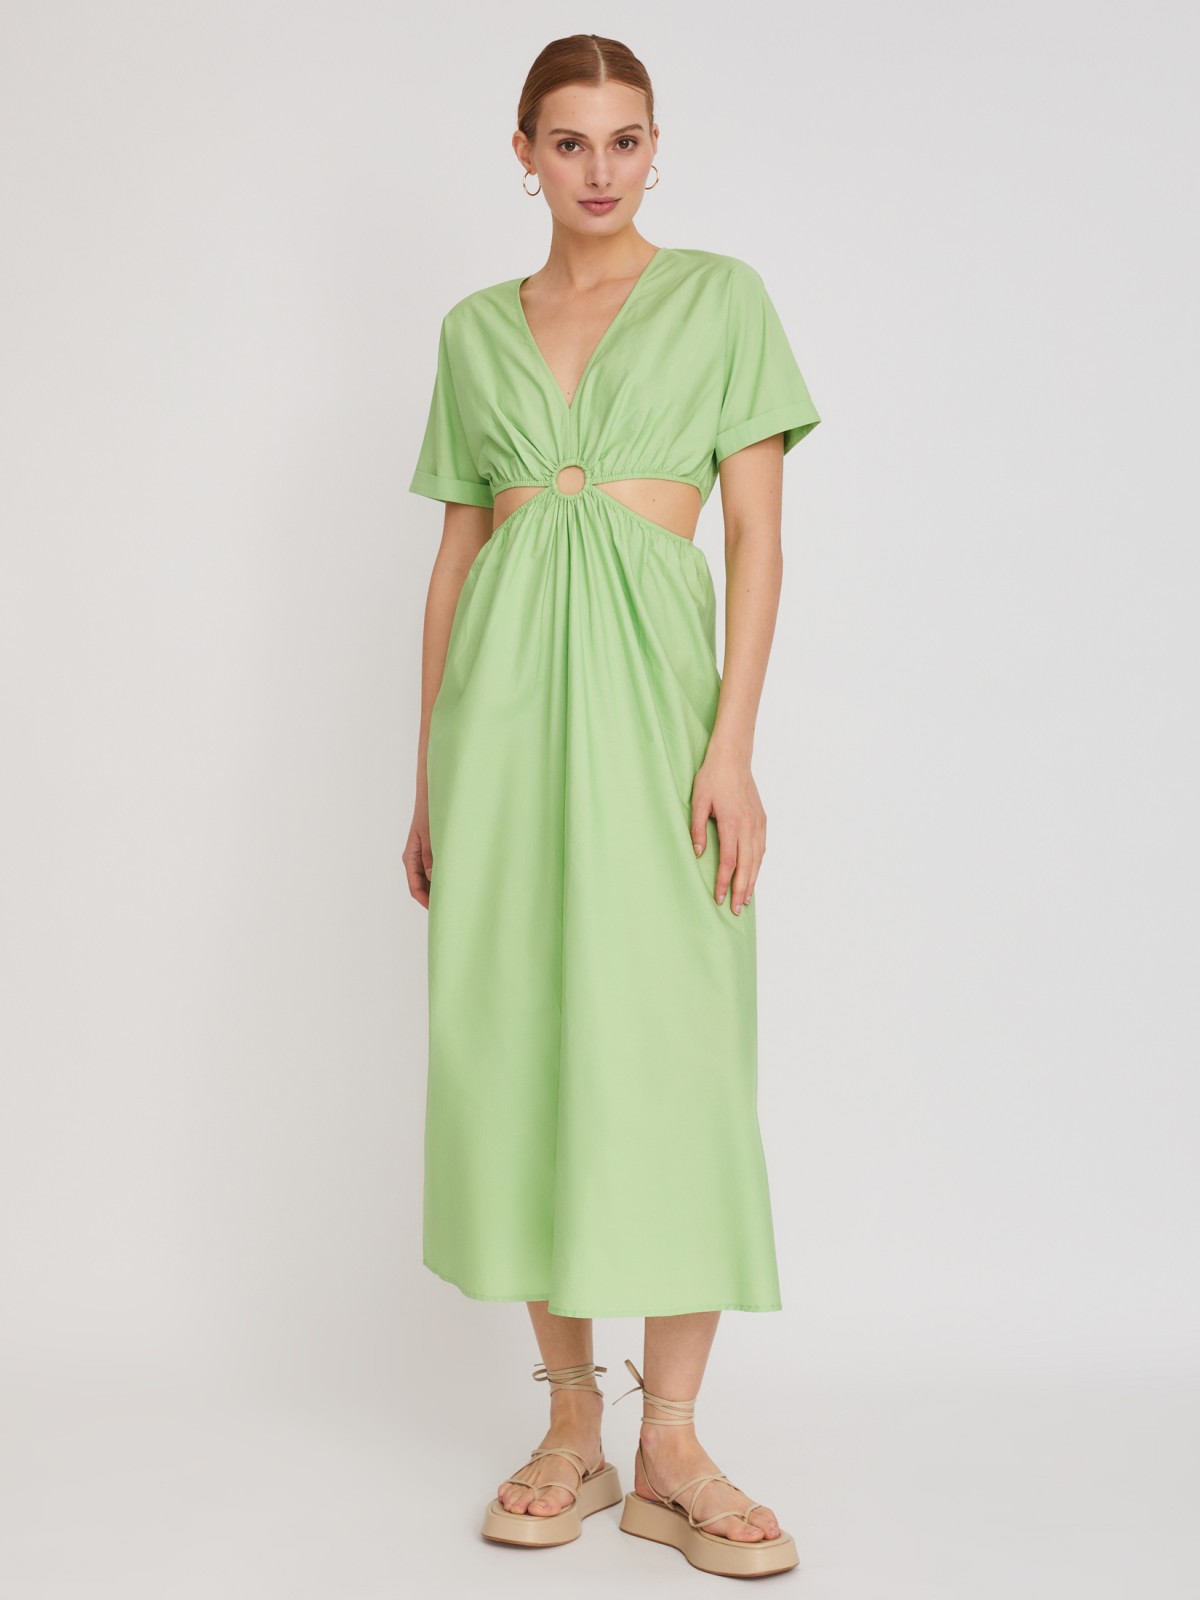 Платье zolla 223248239211, цвет светло-зеленый, размер XS